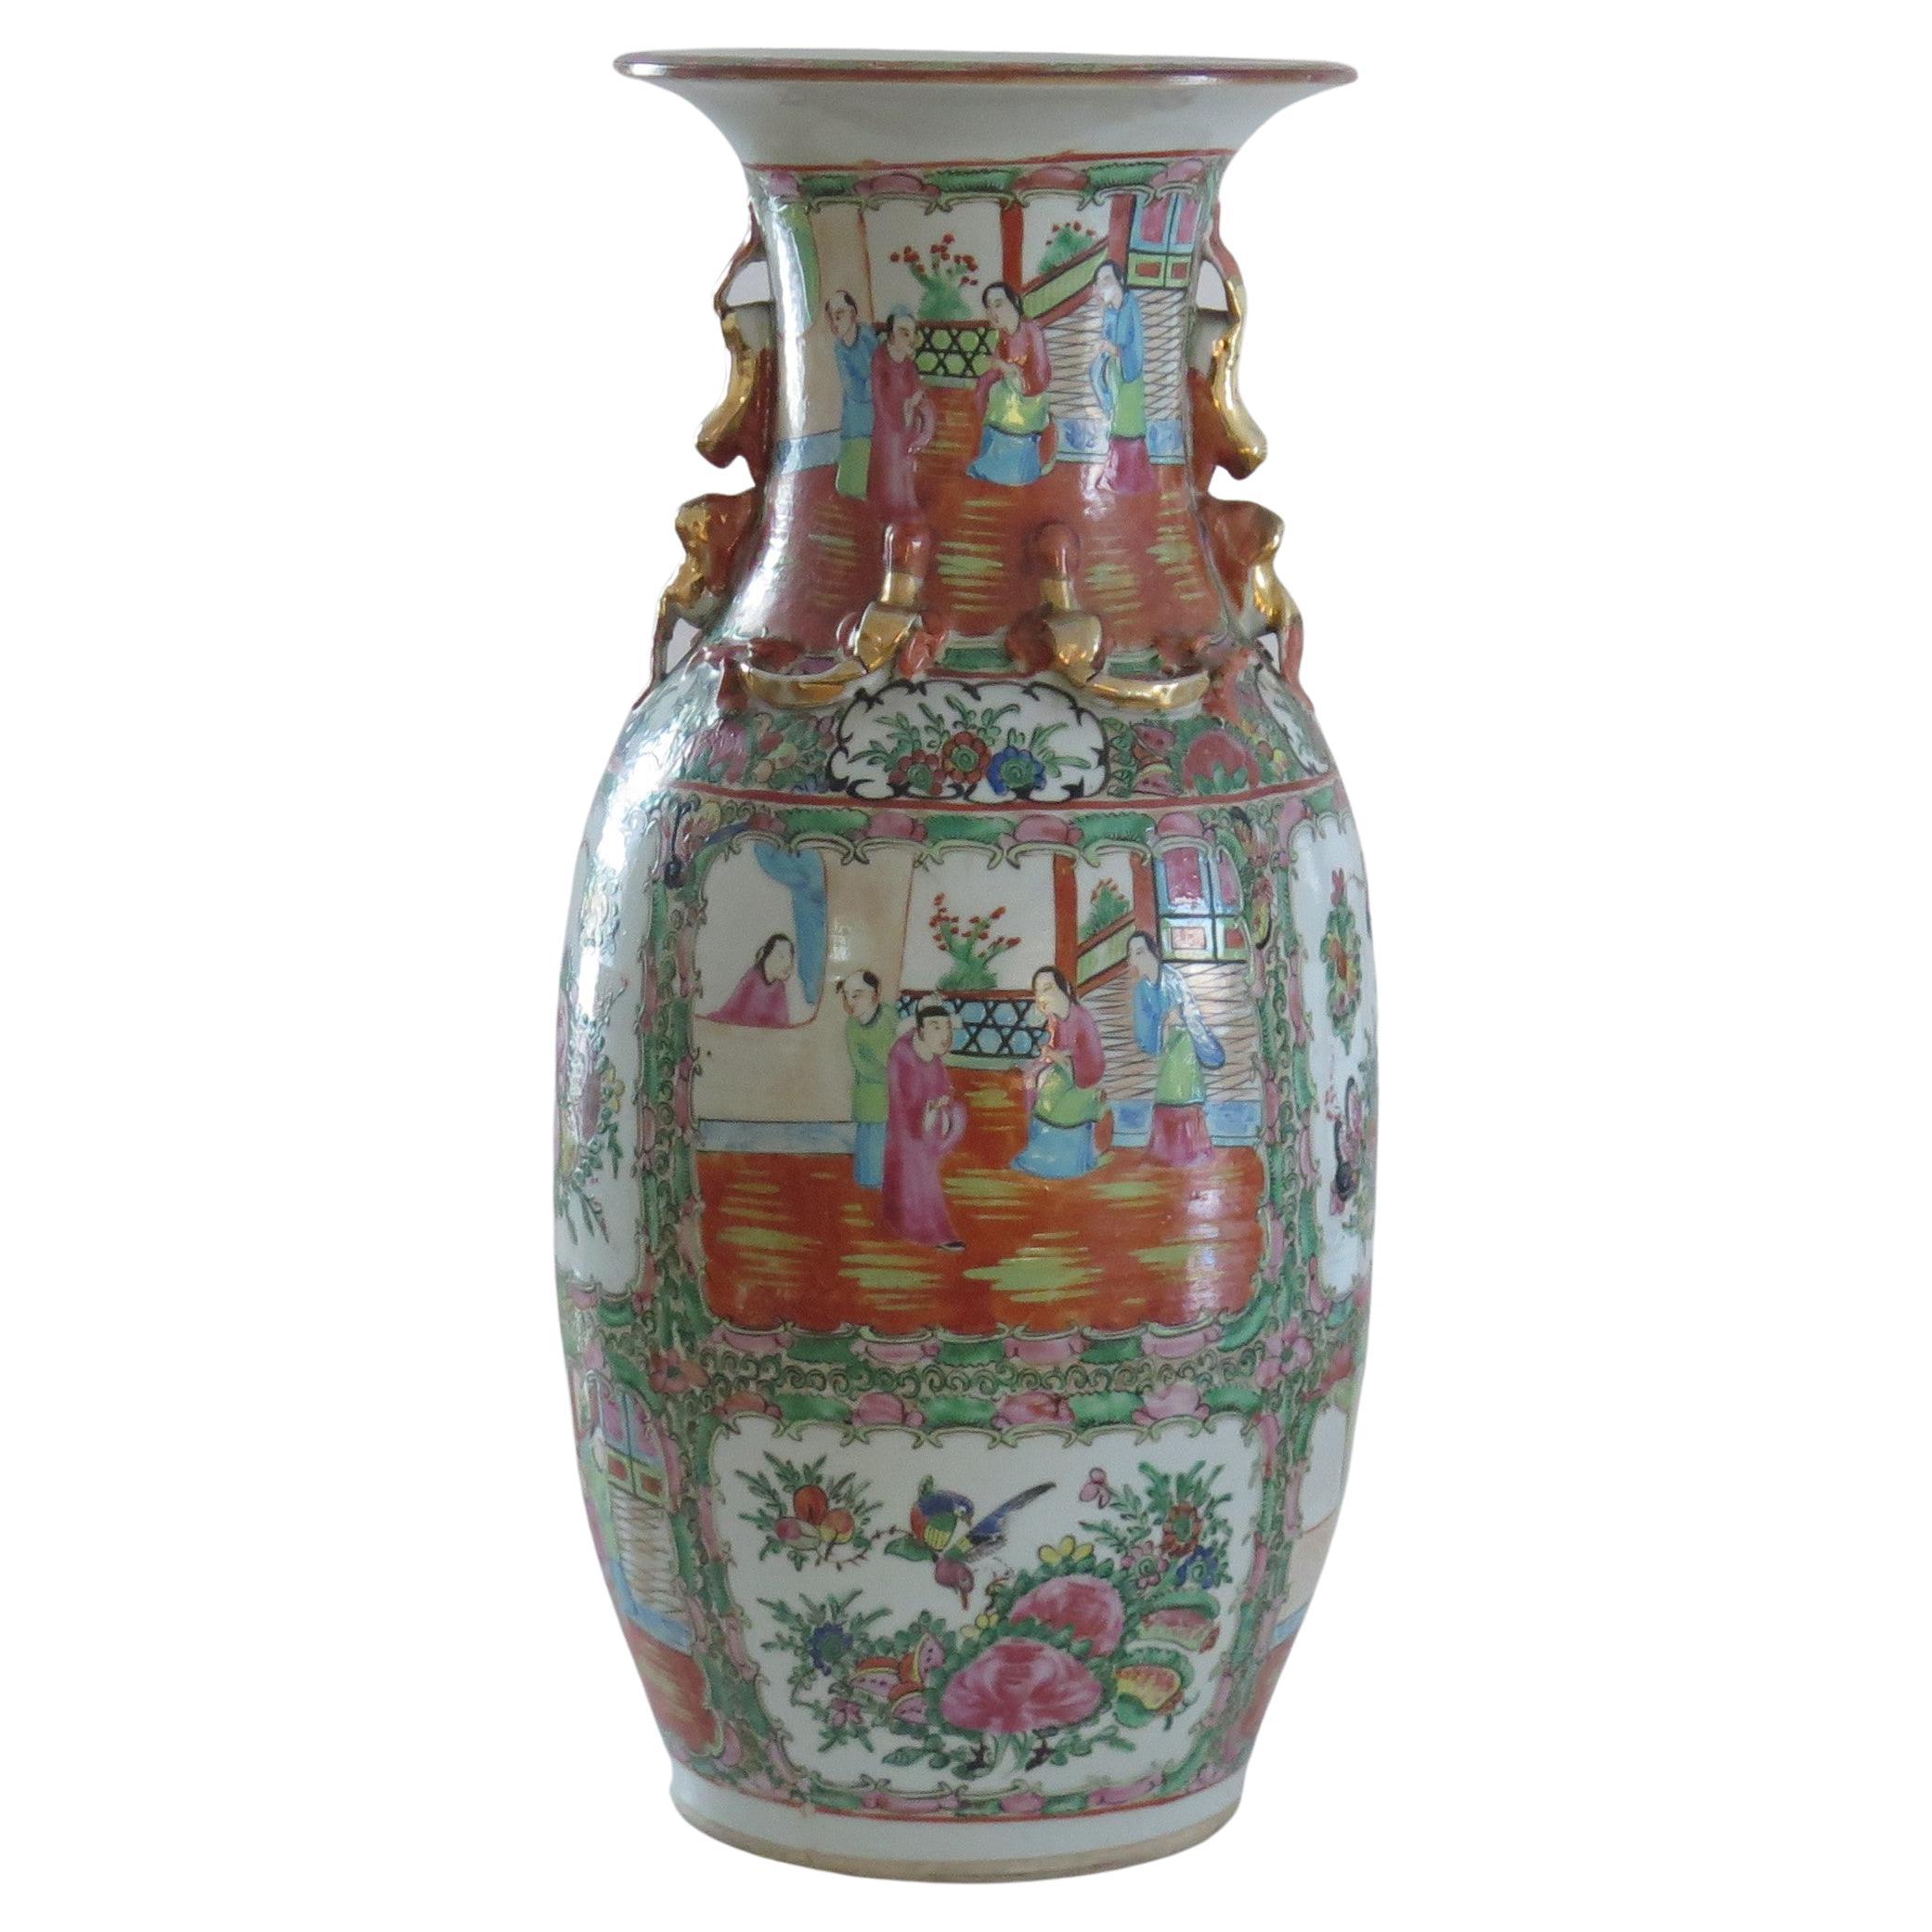 Grand vase en porcelaine à médaillons de roses, exporté de Chine, Qing, vers 1850